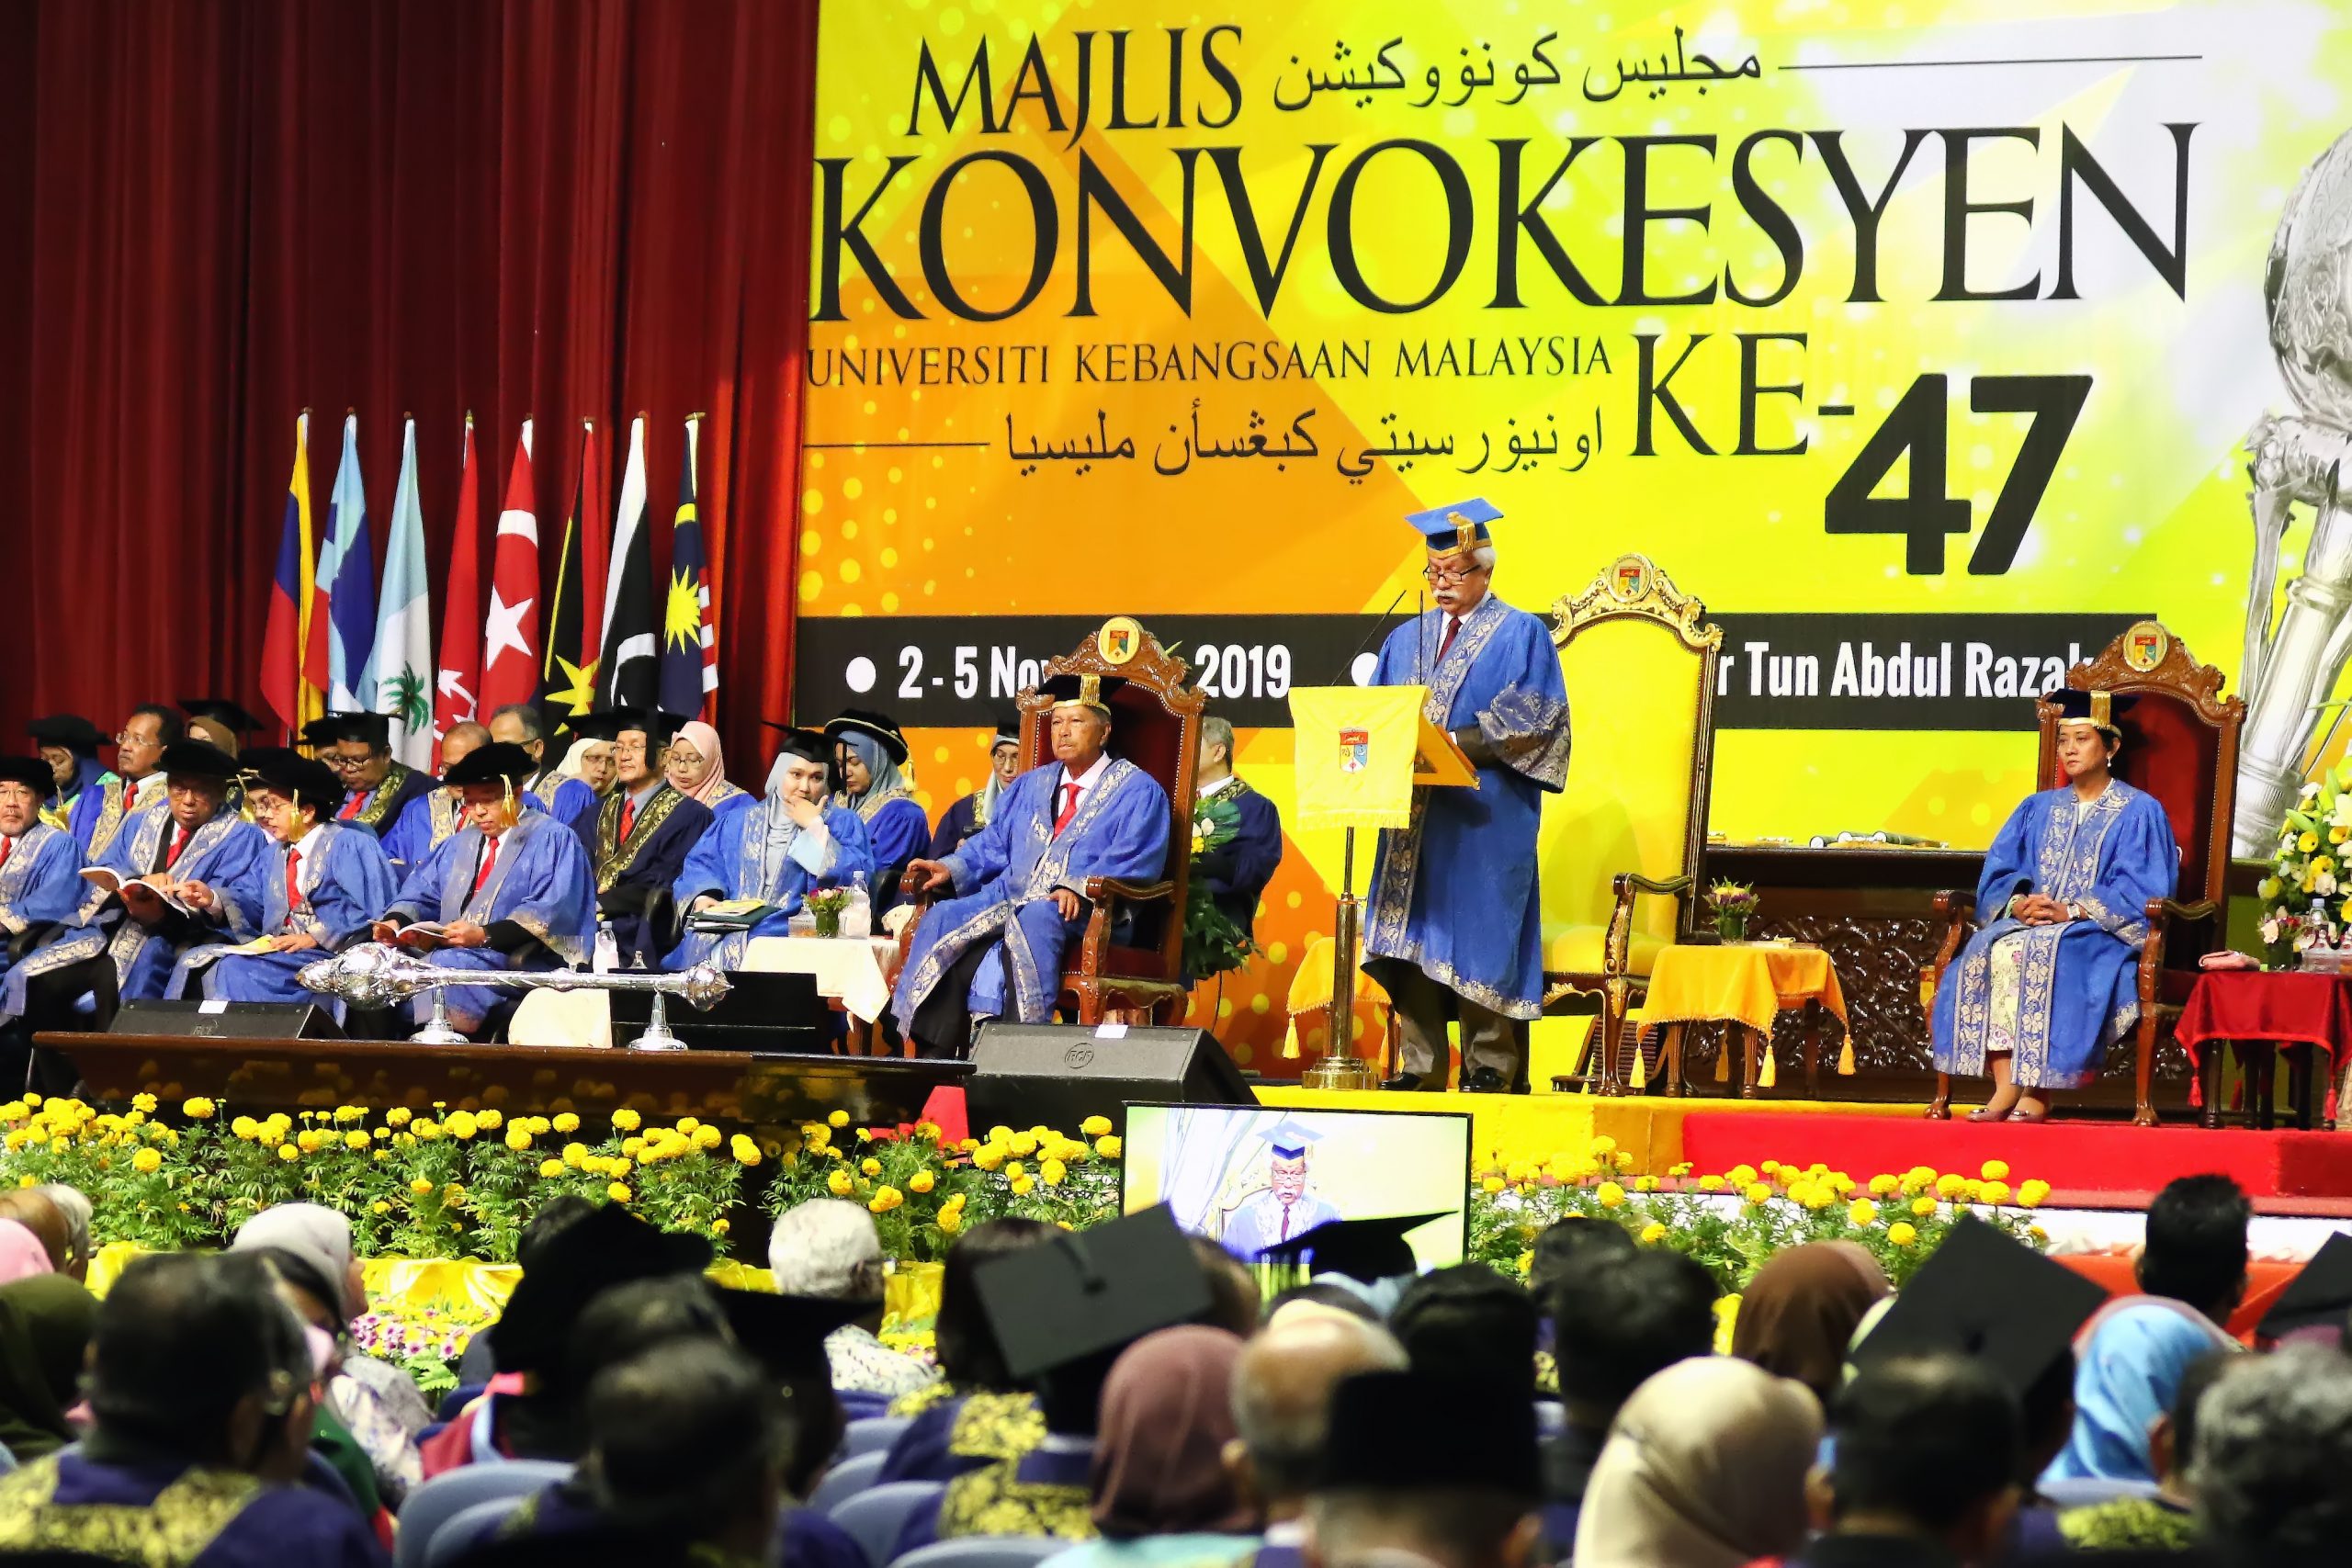 มหาวิทยาลัย Universiti Kebangsaan Malaysia ฉลอง 50 ปีแห่งความเป็นเลิศทางการศึกษา